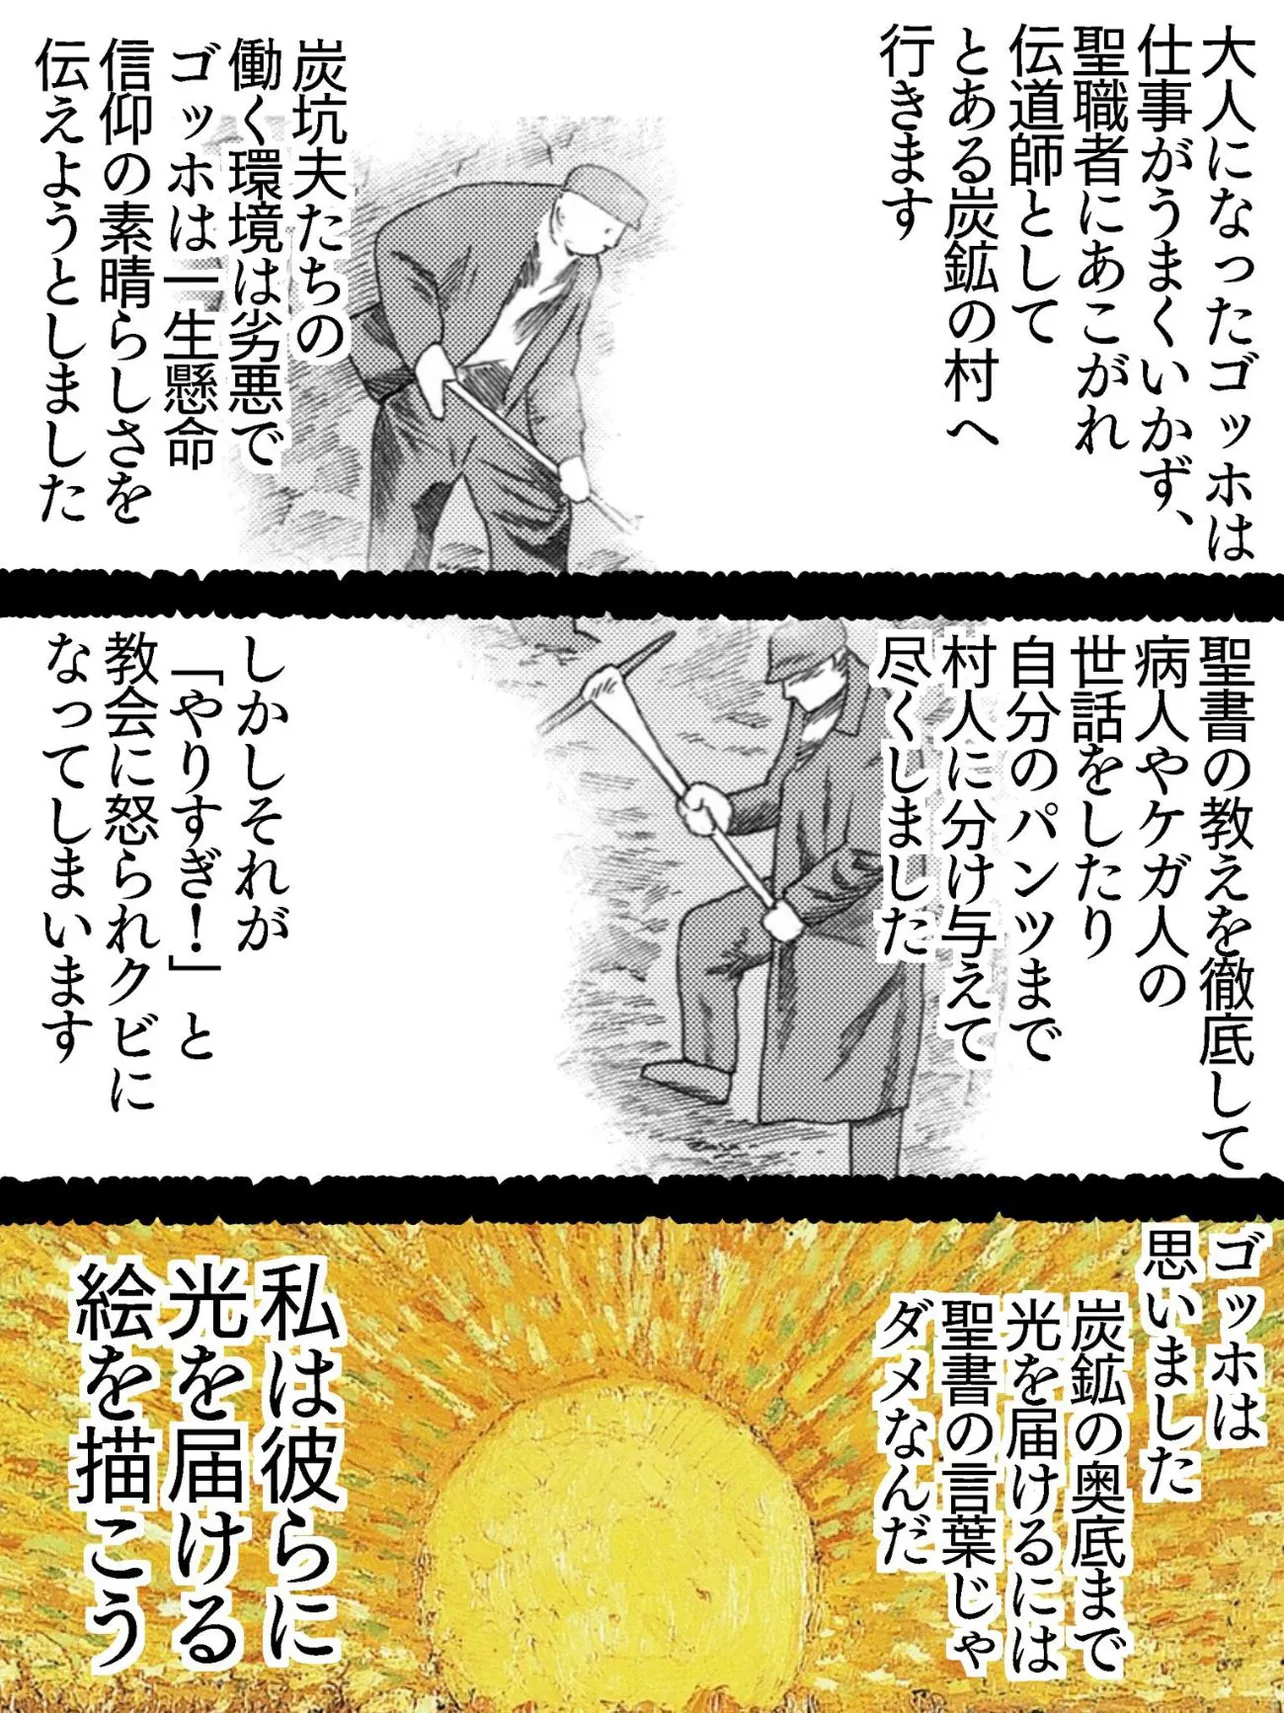 『ゴッホの人生を漫画で解説』(4／22)